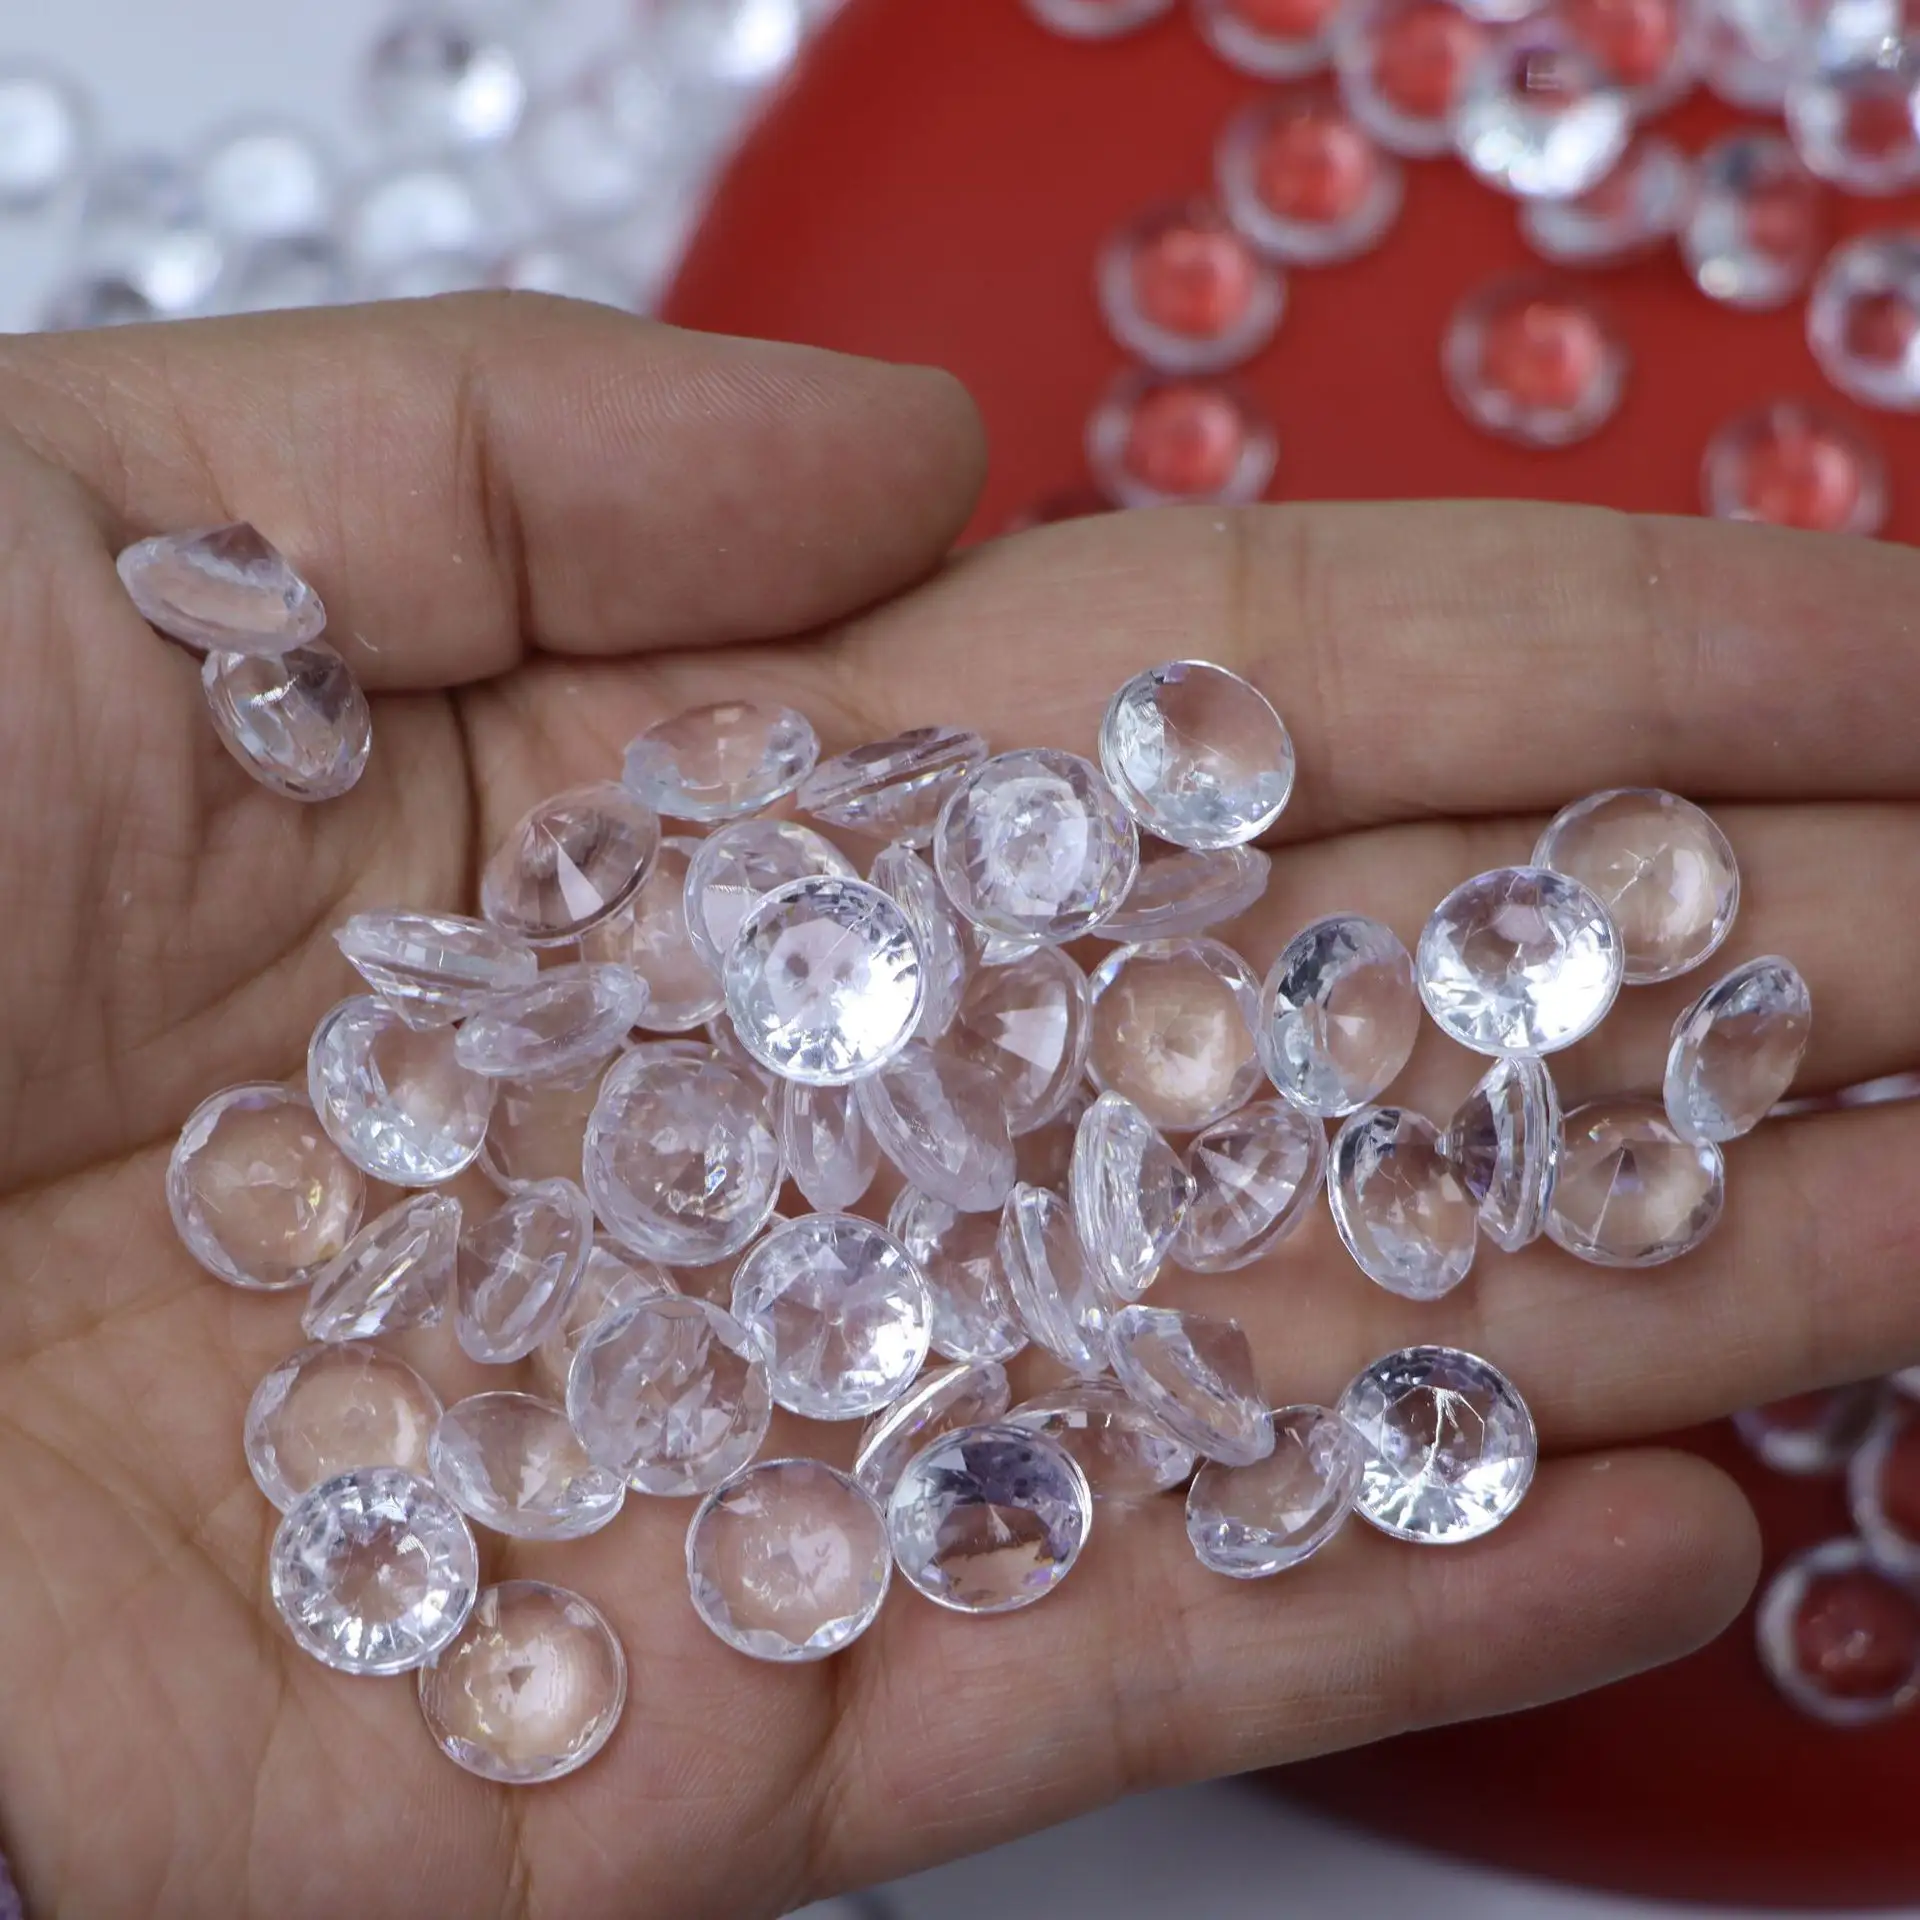 Hongzhiアクリルダイヤモンド工場卸売テーブル散布プラスチックダイヤモンドビーズ装飾結婚式のディスプレイ花瓶フィラー